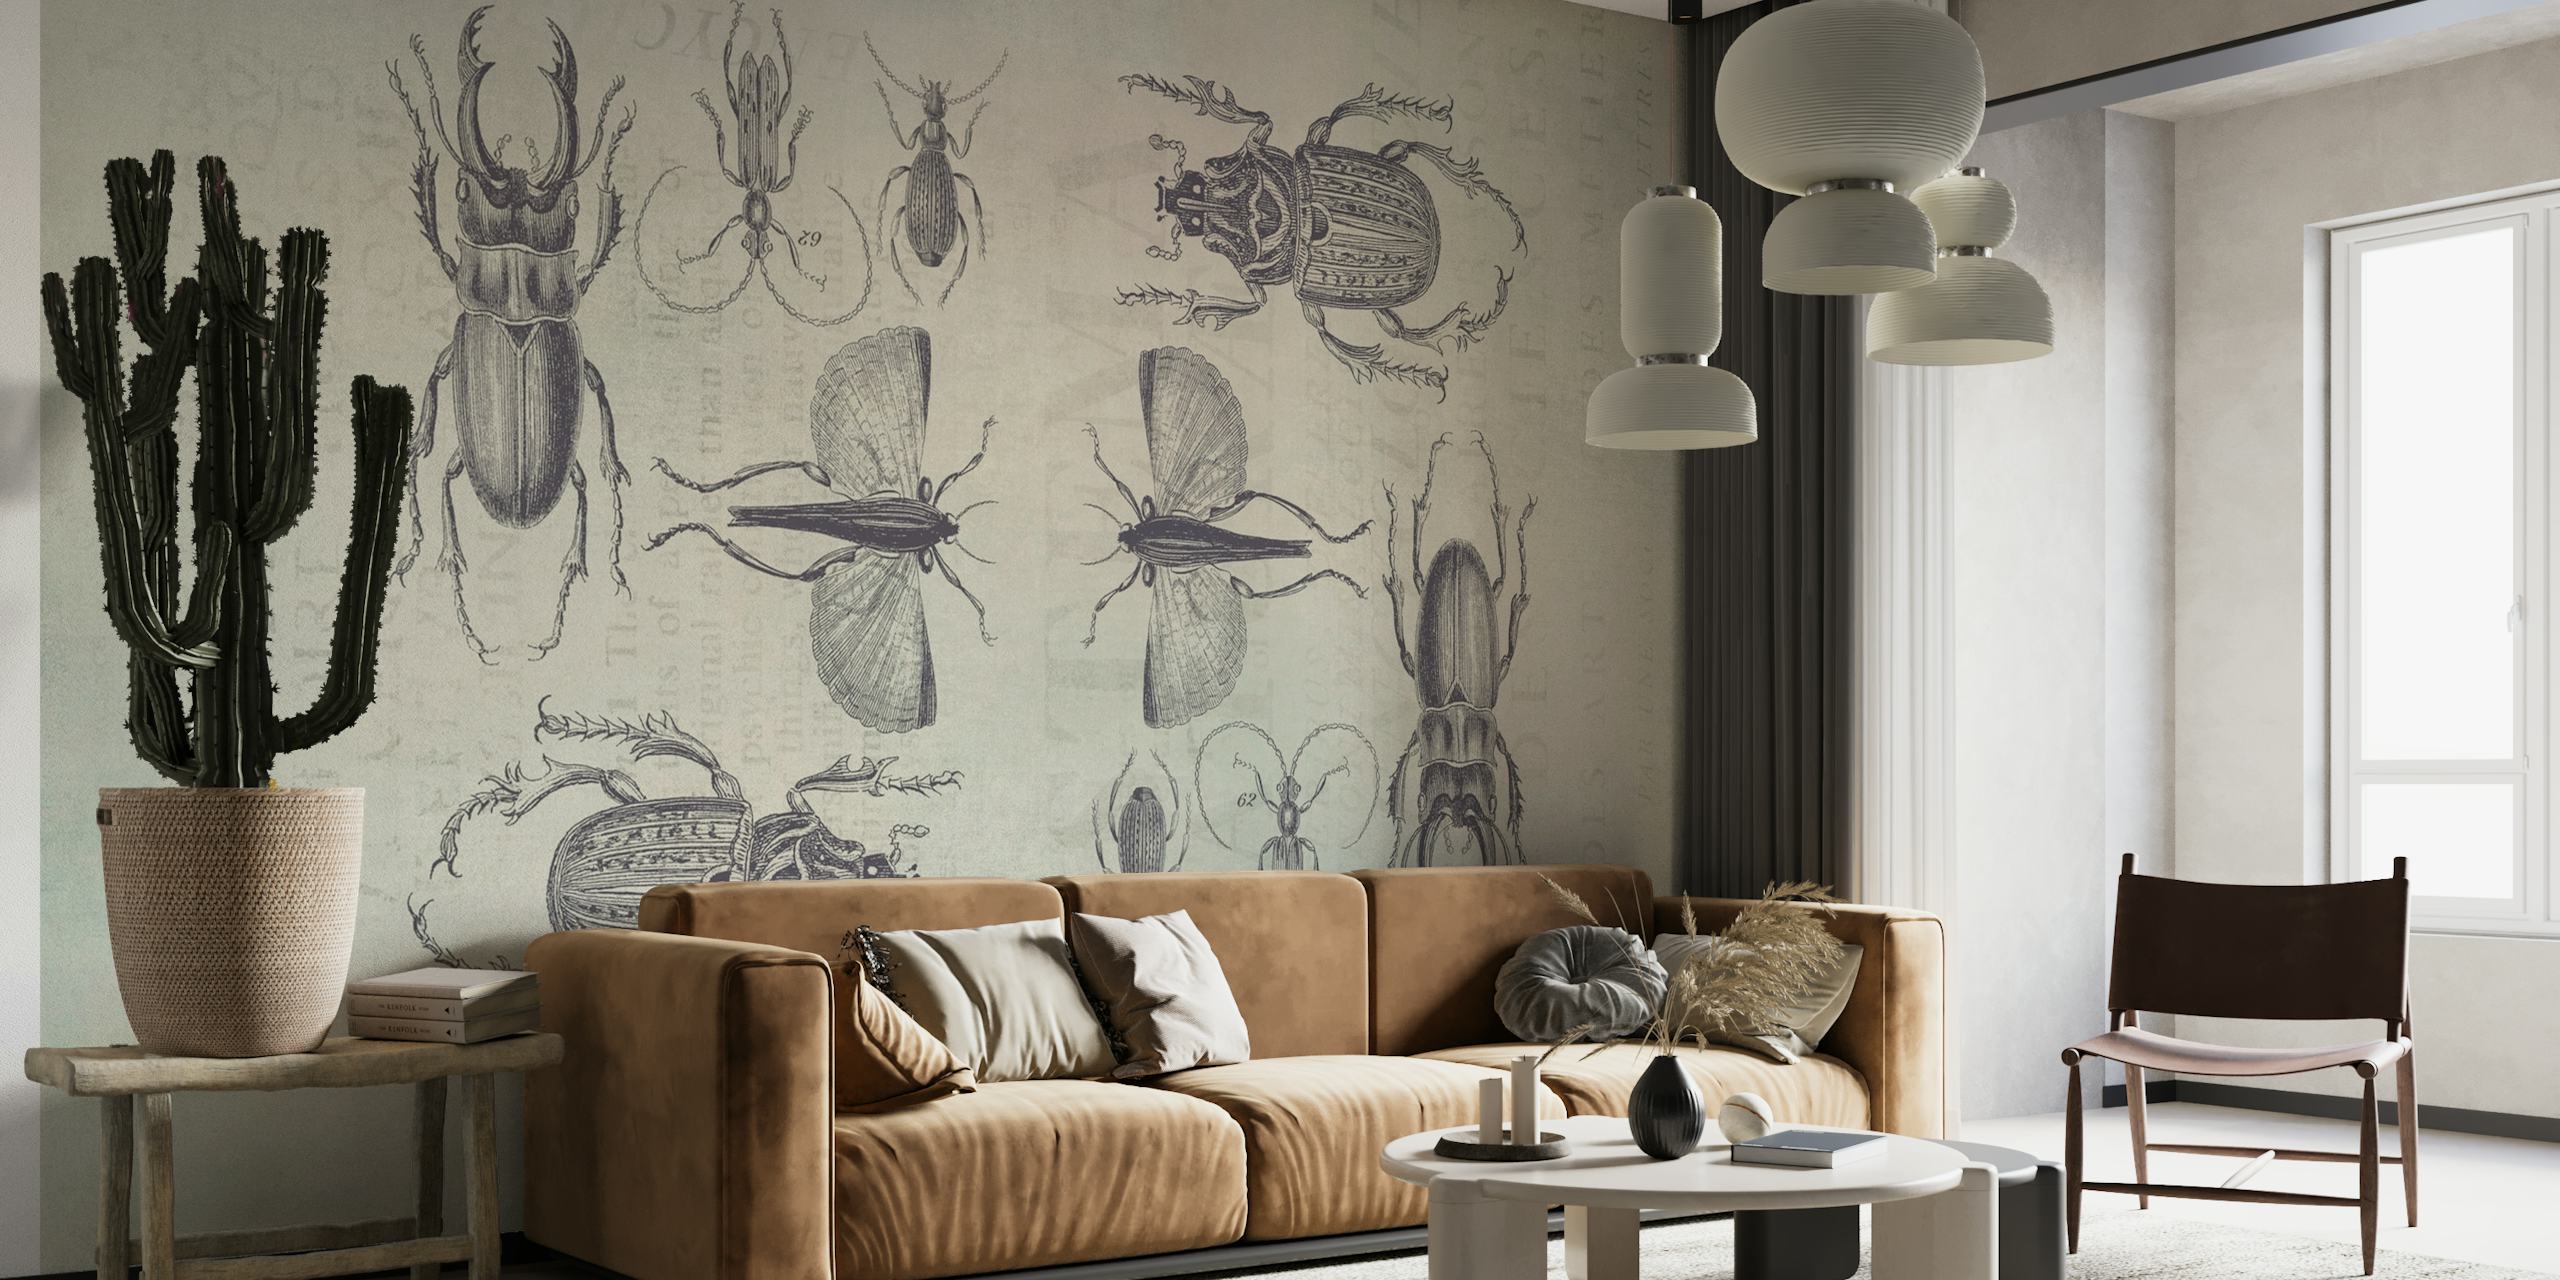 Fototapeta Bugs and Beetles s detailními ilustracemi hmyzu na retro pozadí